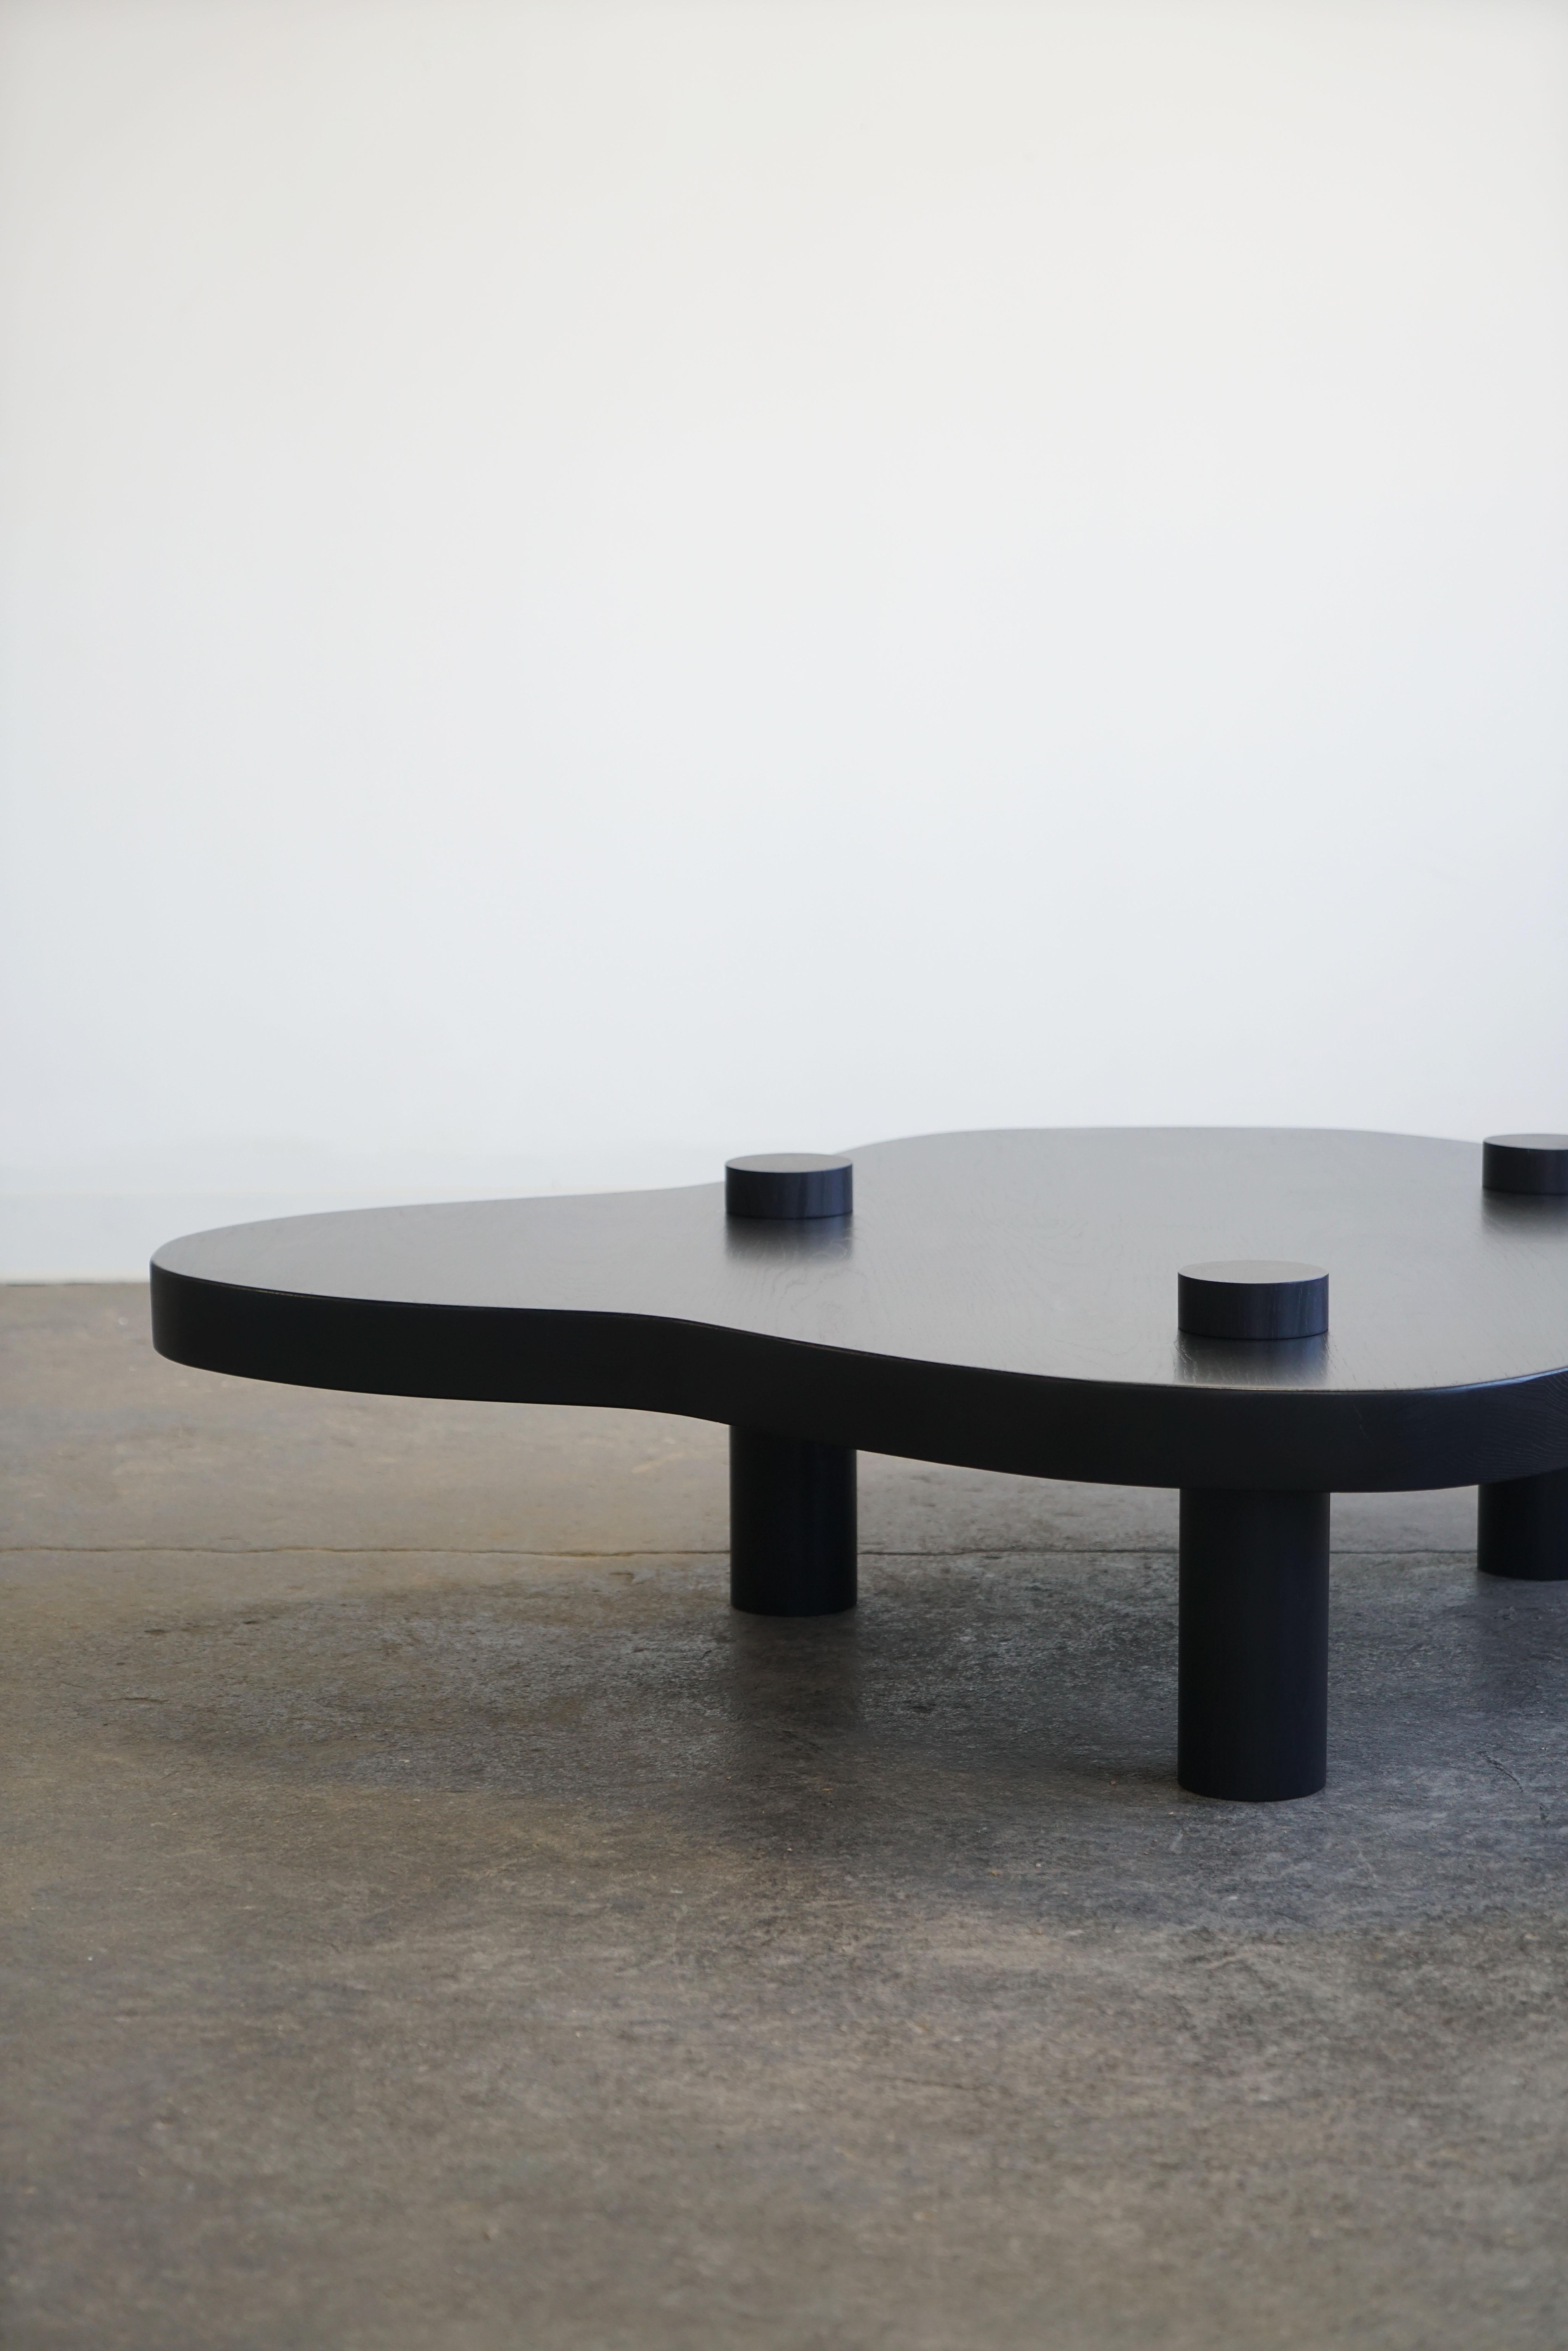 Chêne Table basse moderne organique de forme libre en chêne noir, design minimaliste. en vente